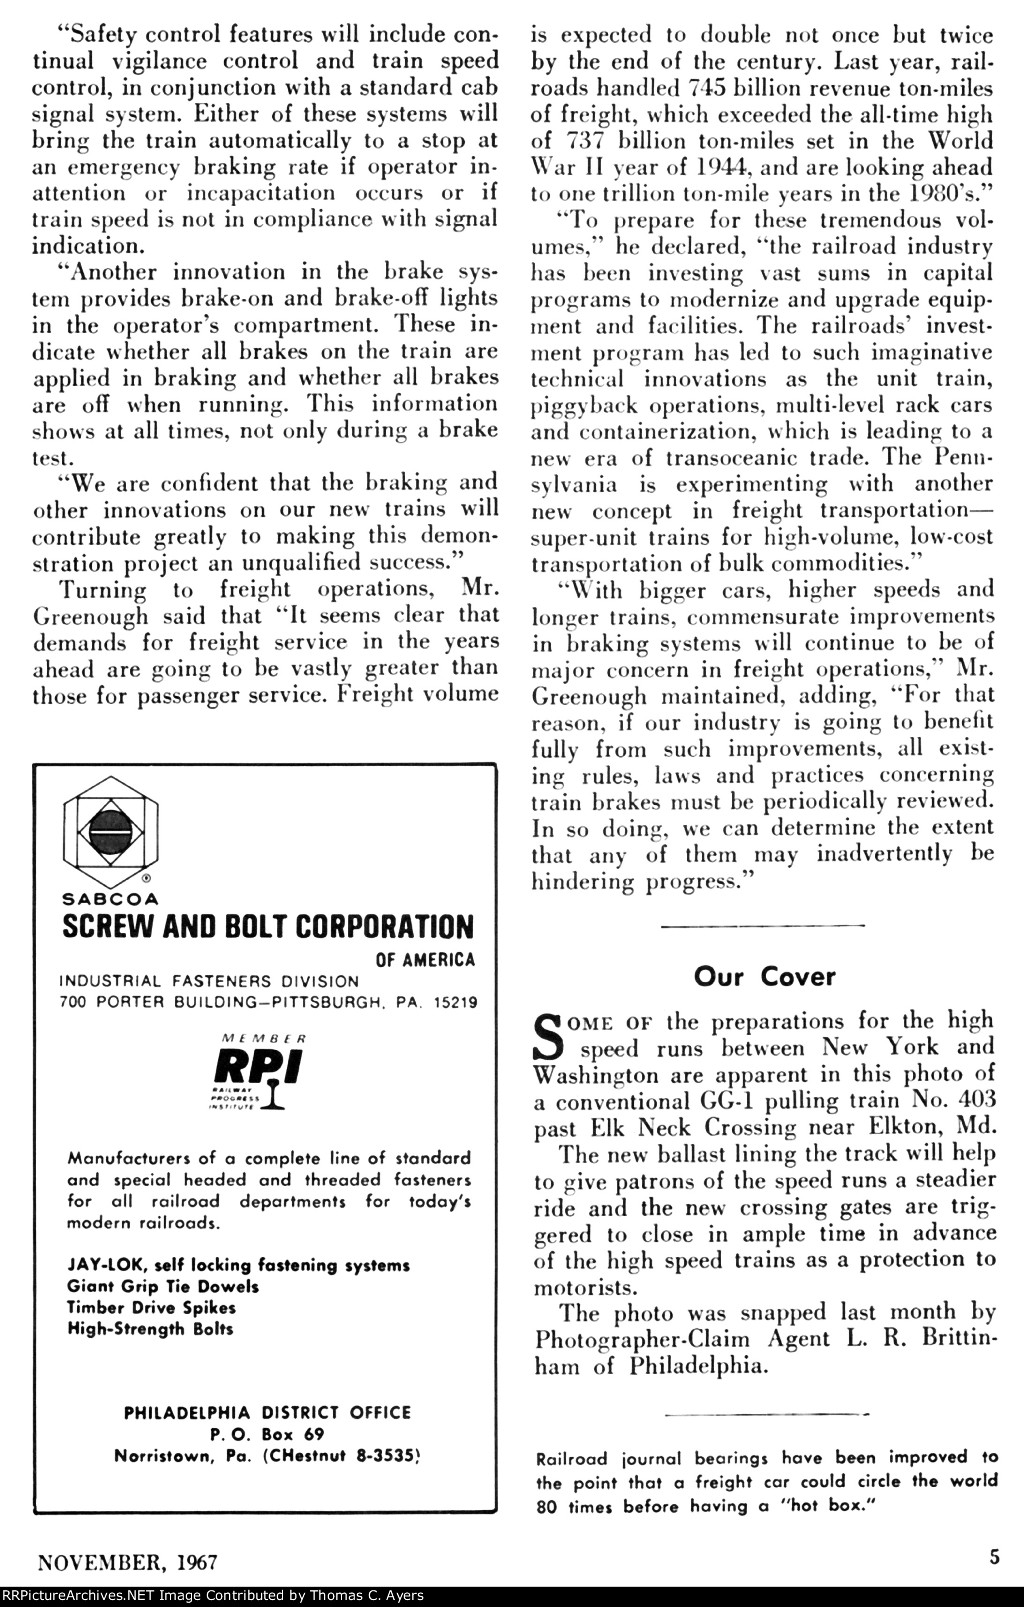 Metroliner Test Runs, Page 5, 1967